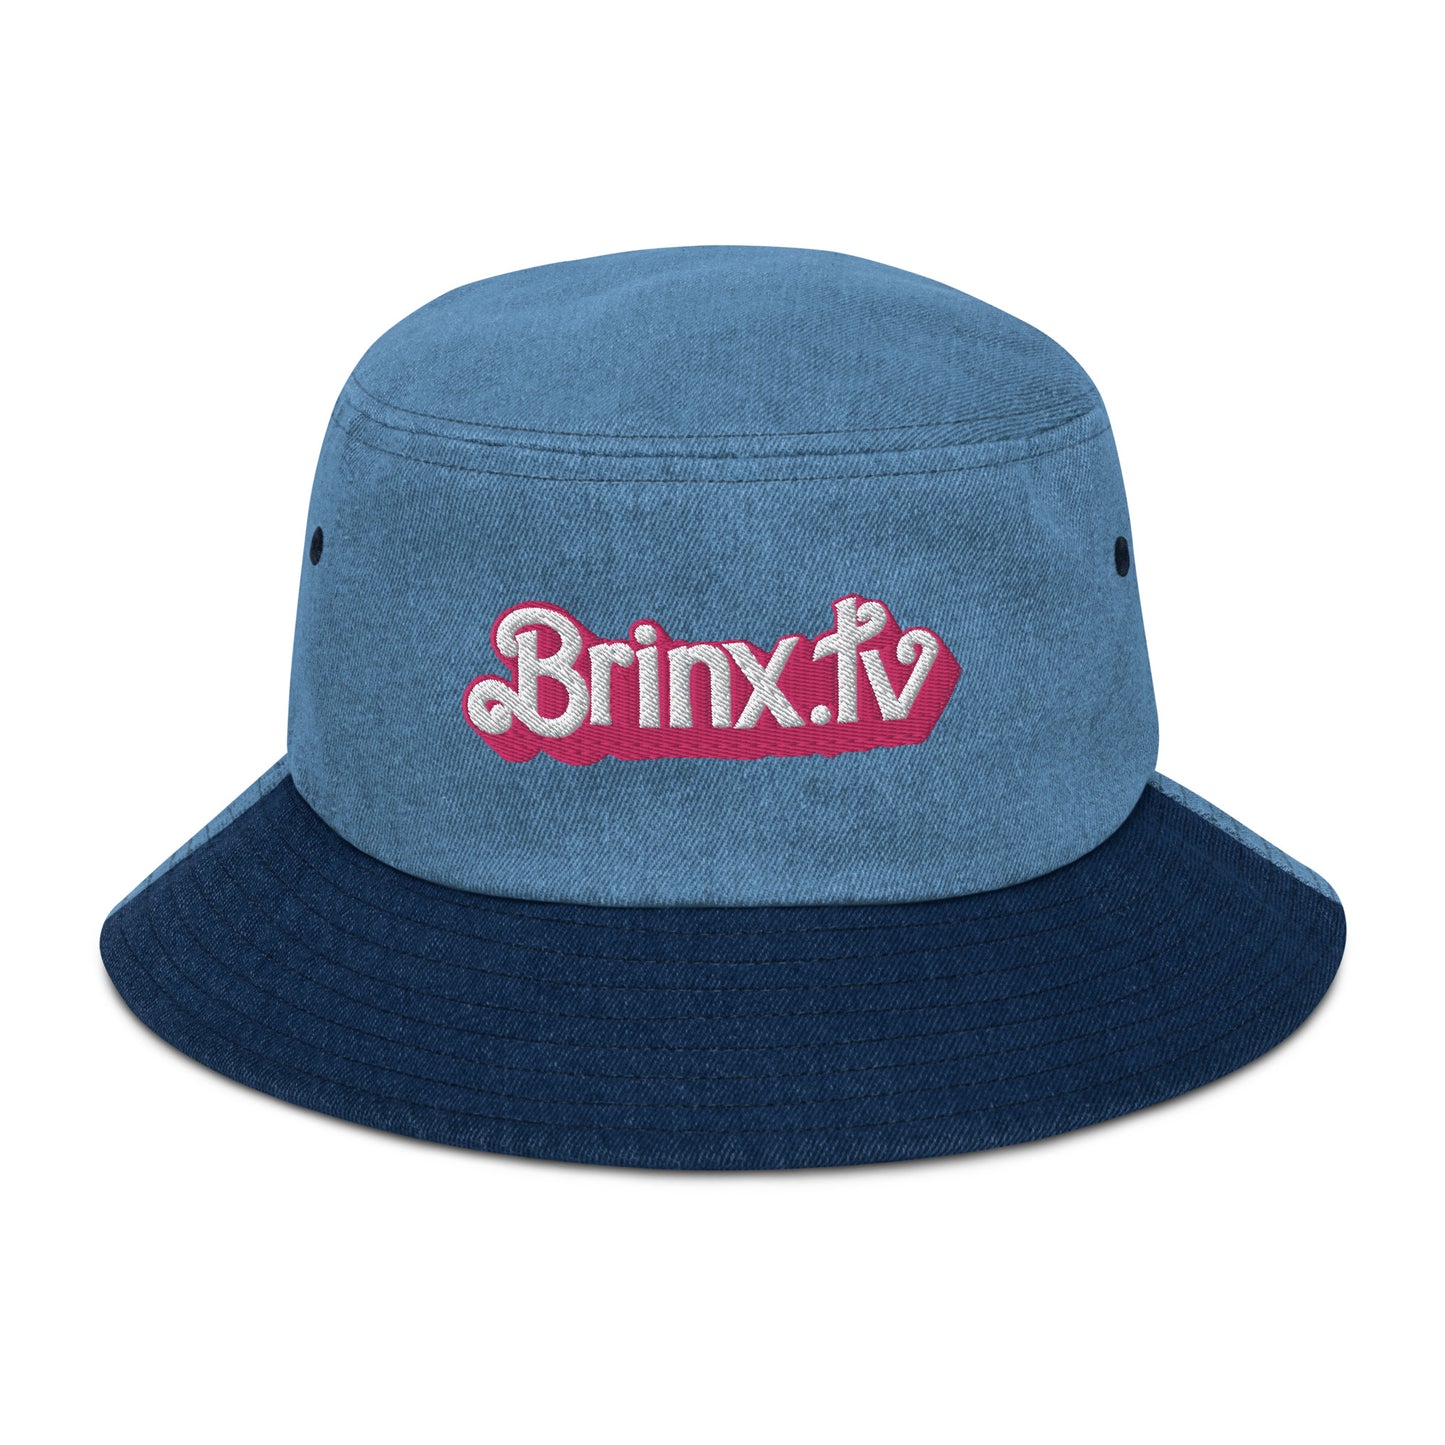 BRINX.TV is PINK